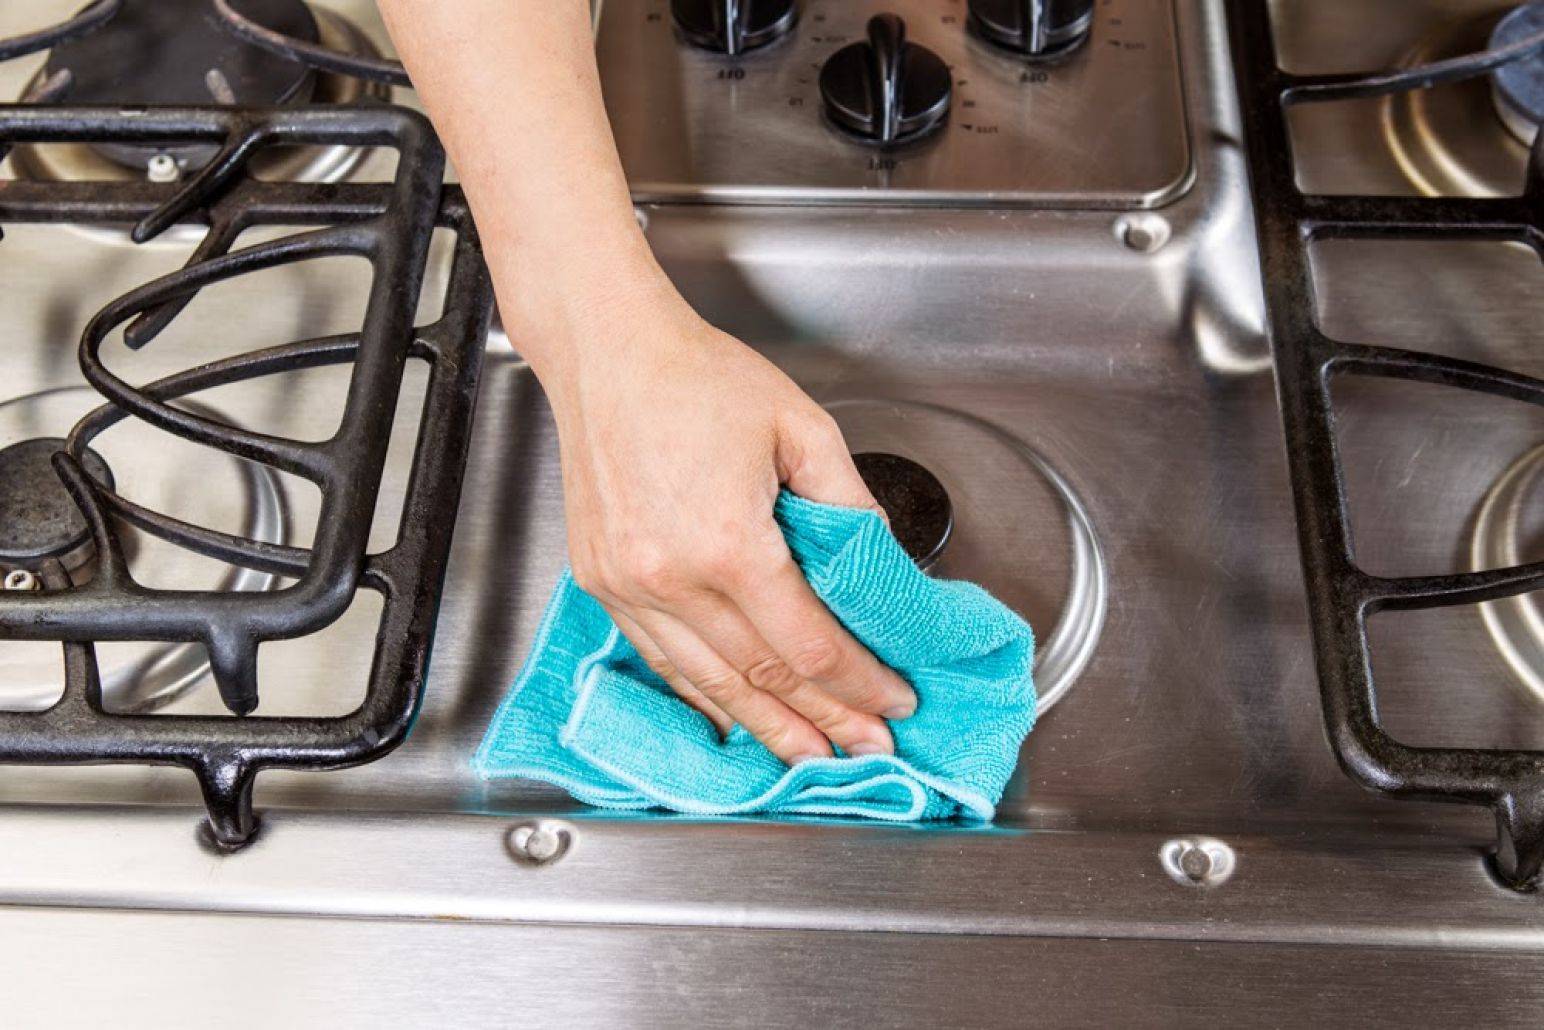 Как отмыть разные поверхности кухонной мебели от жира